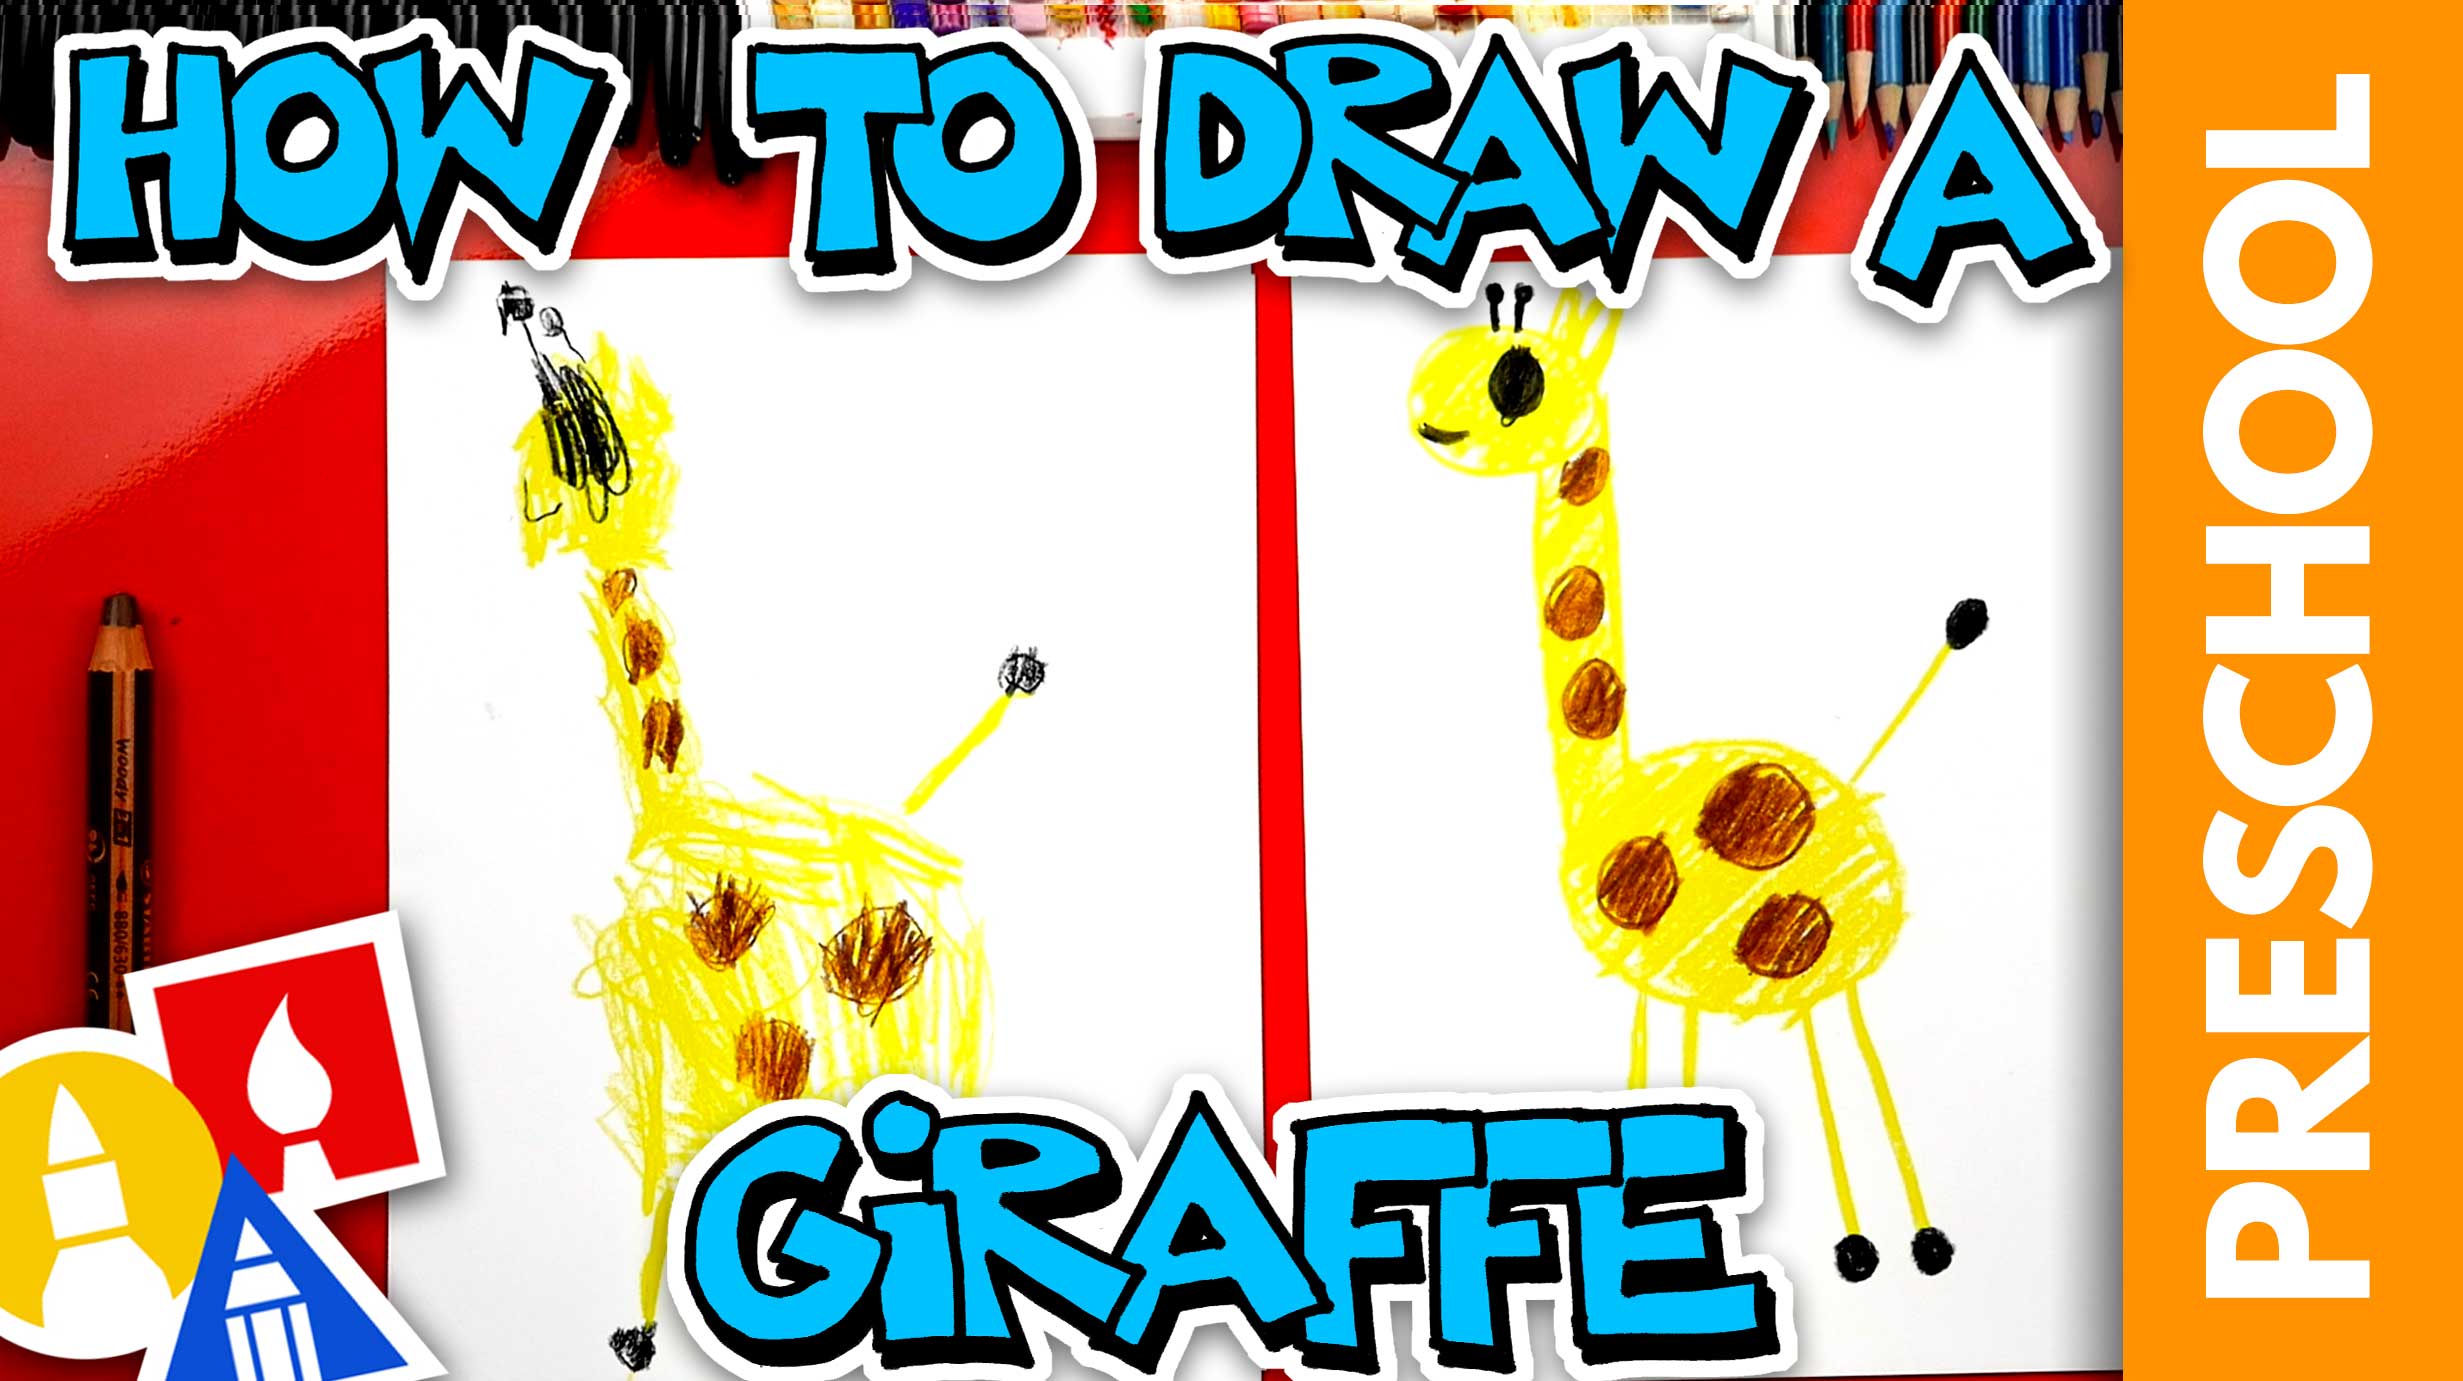 Giraffe colourful: ภาพสต็อกและรูปภาพ - 73,623 ภาพ | Shutterstock